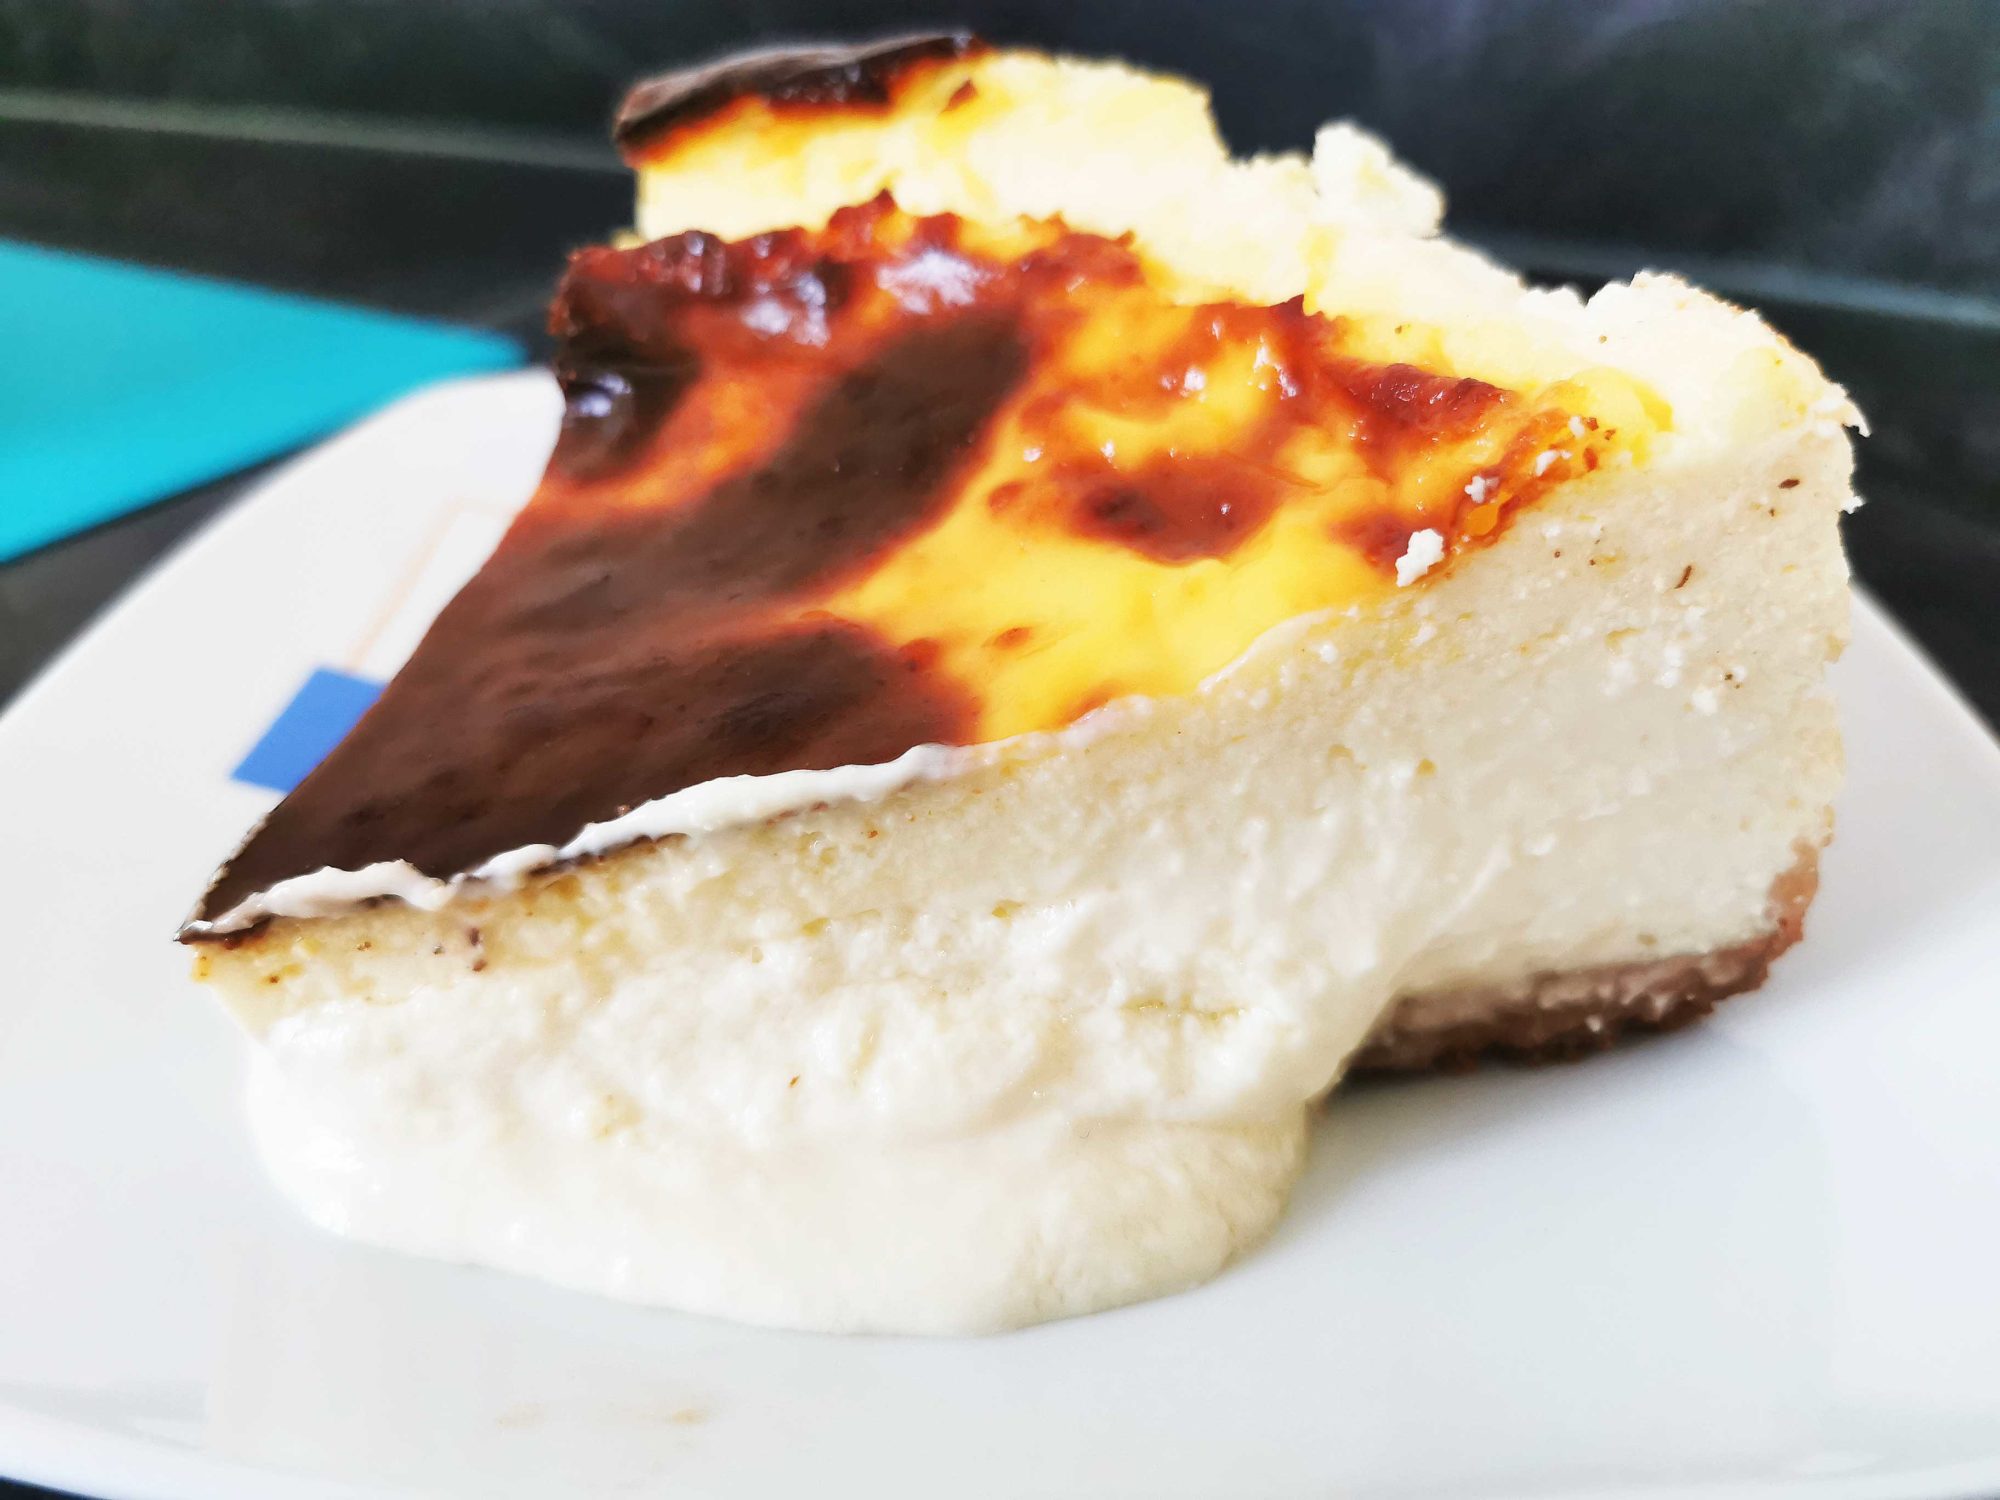 Tarta de queso cremosa - MadreatGirl - Receta fácil y deliciosa